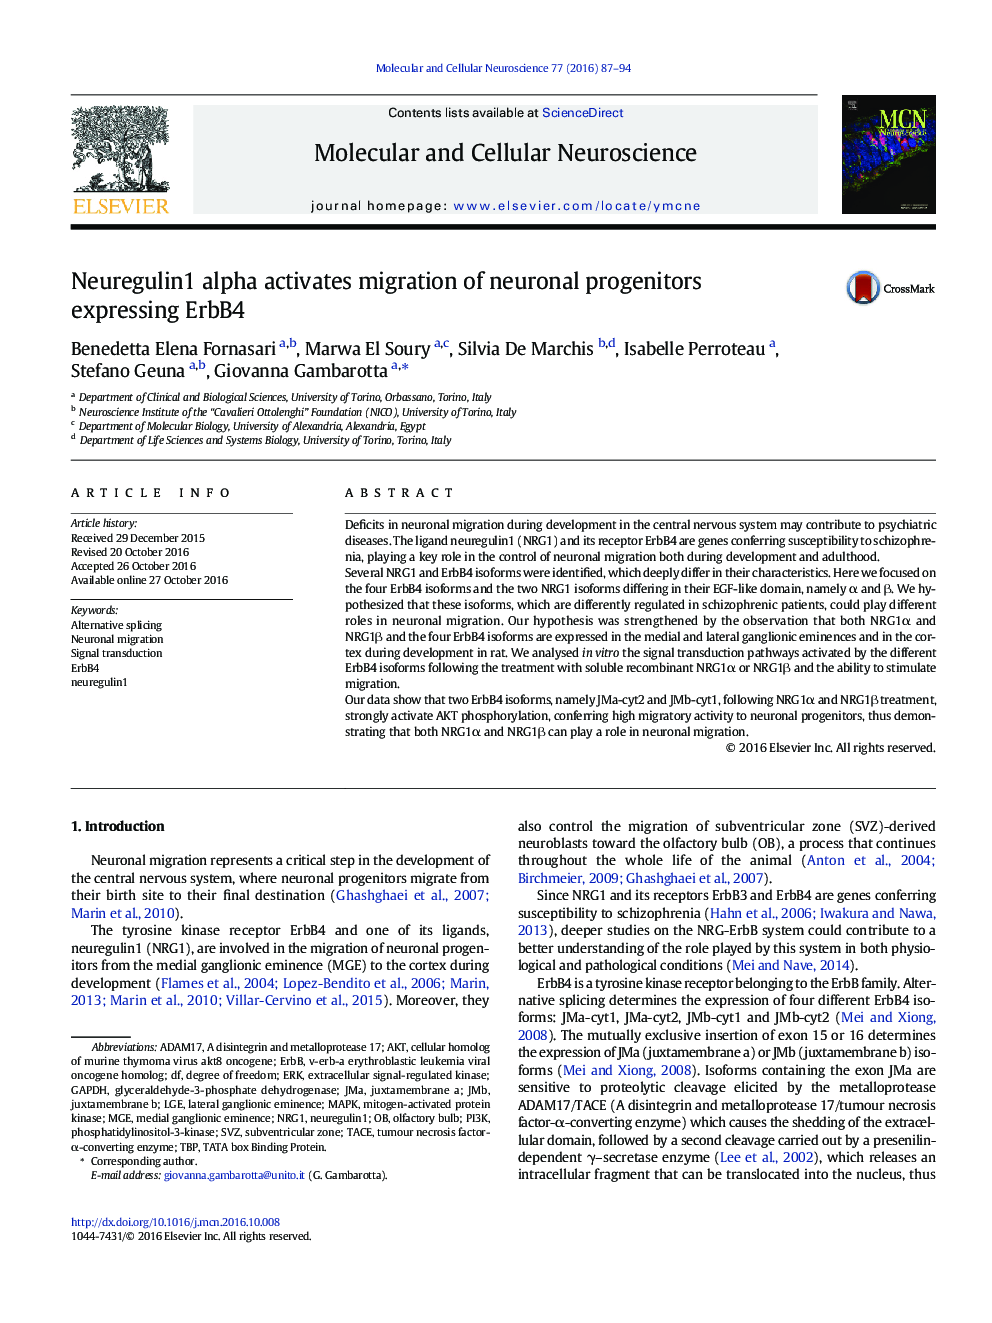 Neuregulin1 alpha activates migration of neuronal progenitors expressing ErbB4